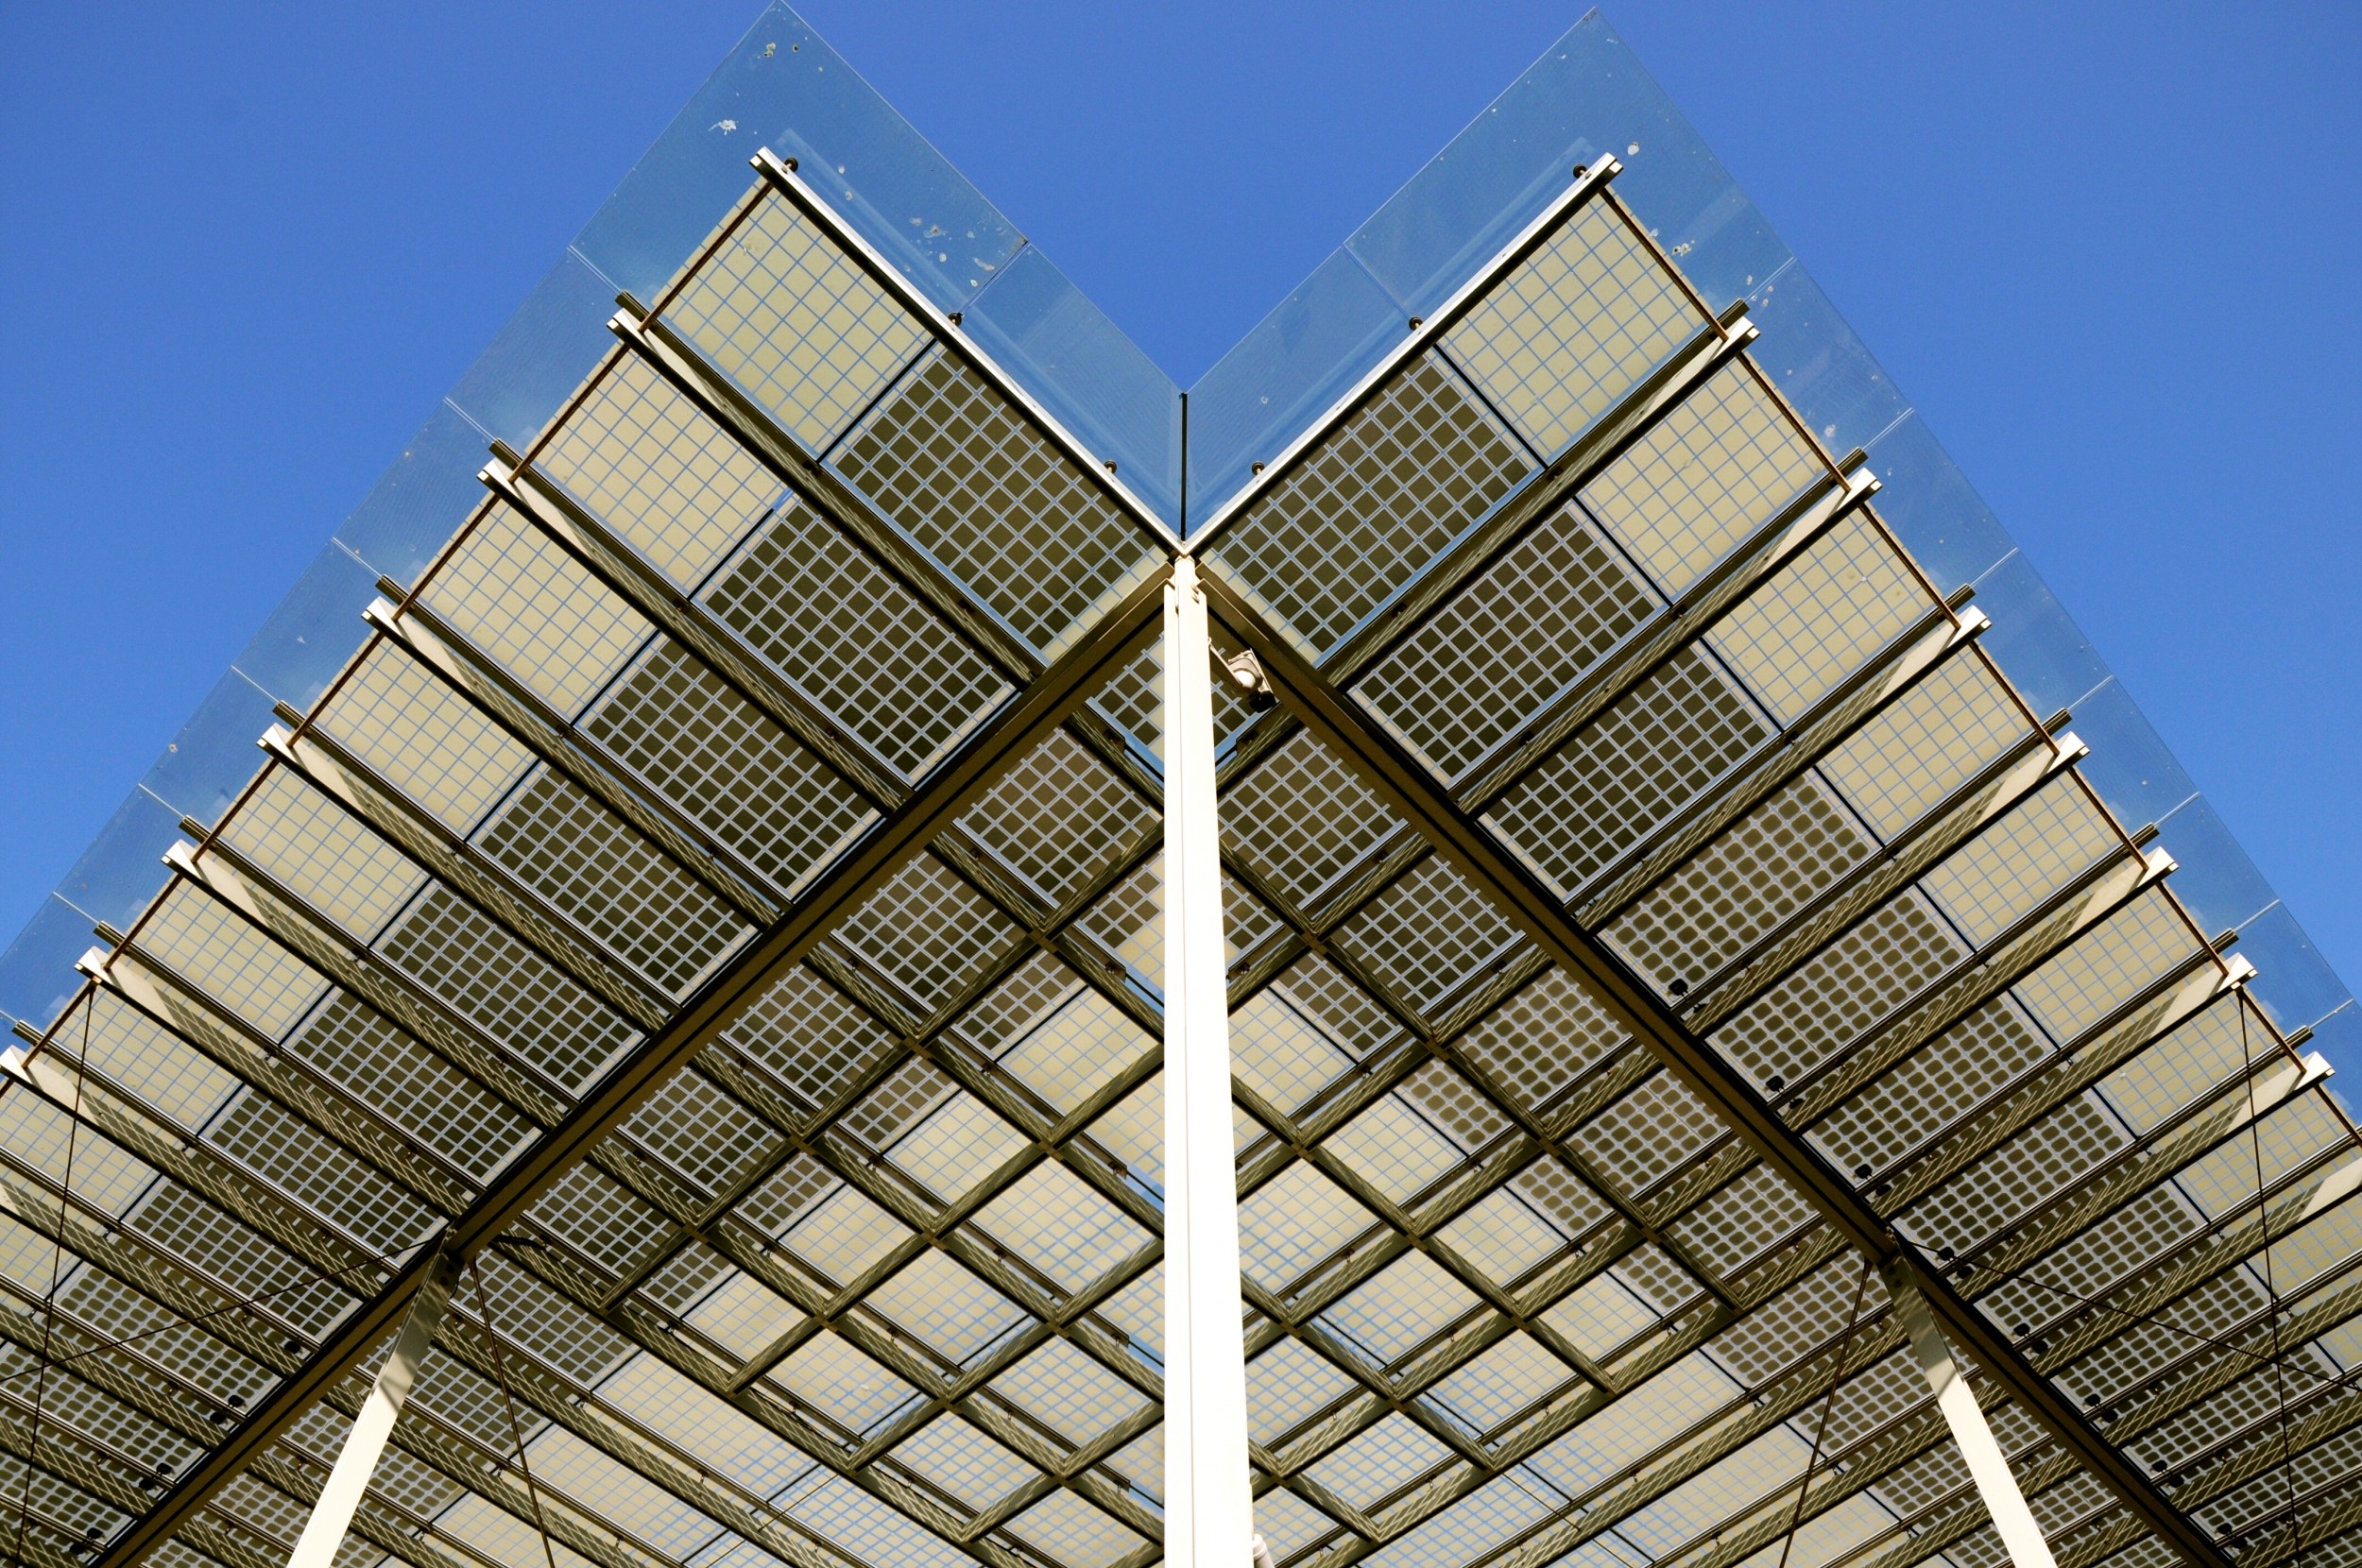 Solarzellen, die direkt in die Gebäudehülle integriert sind, eröffnen neue architektonische Möglichkeiten.